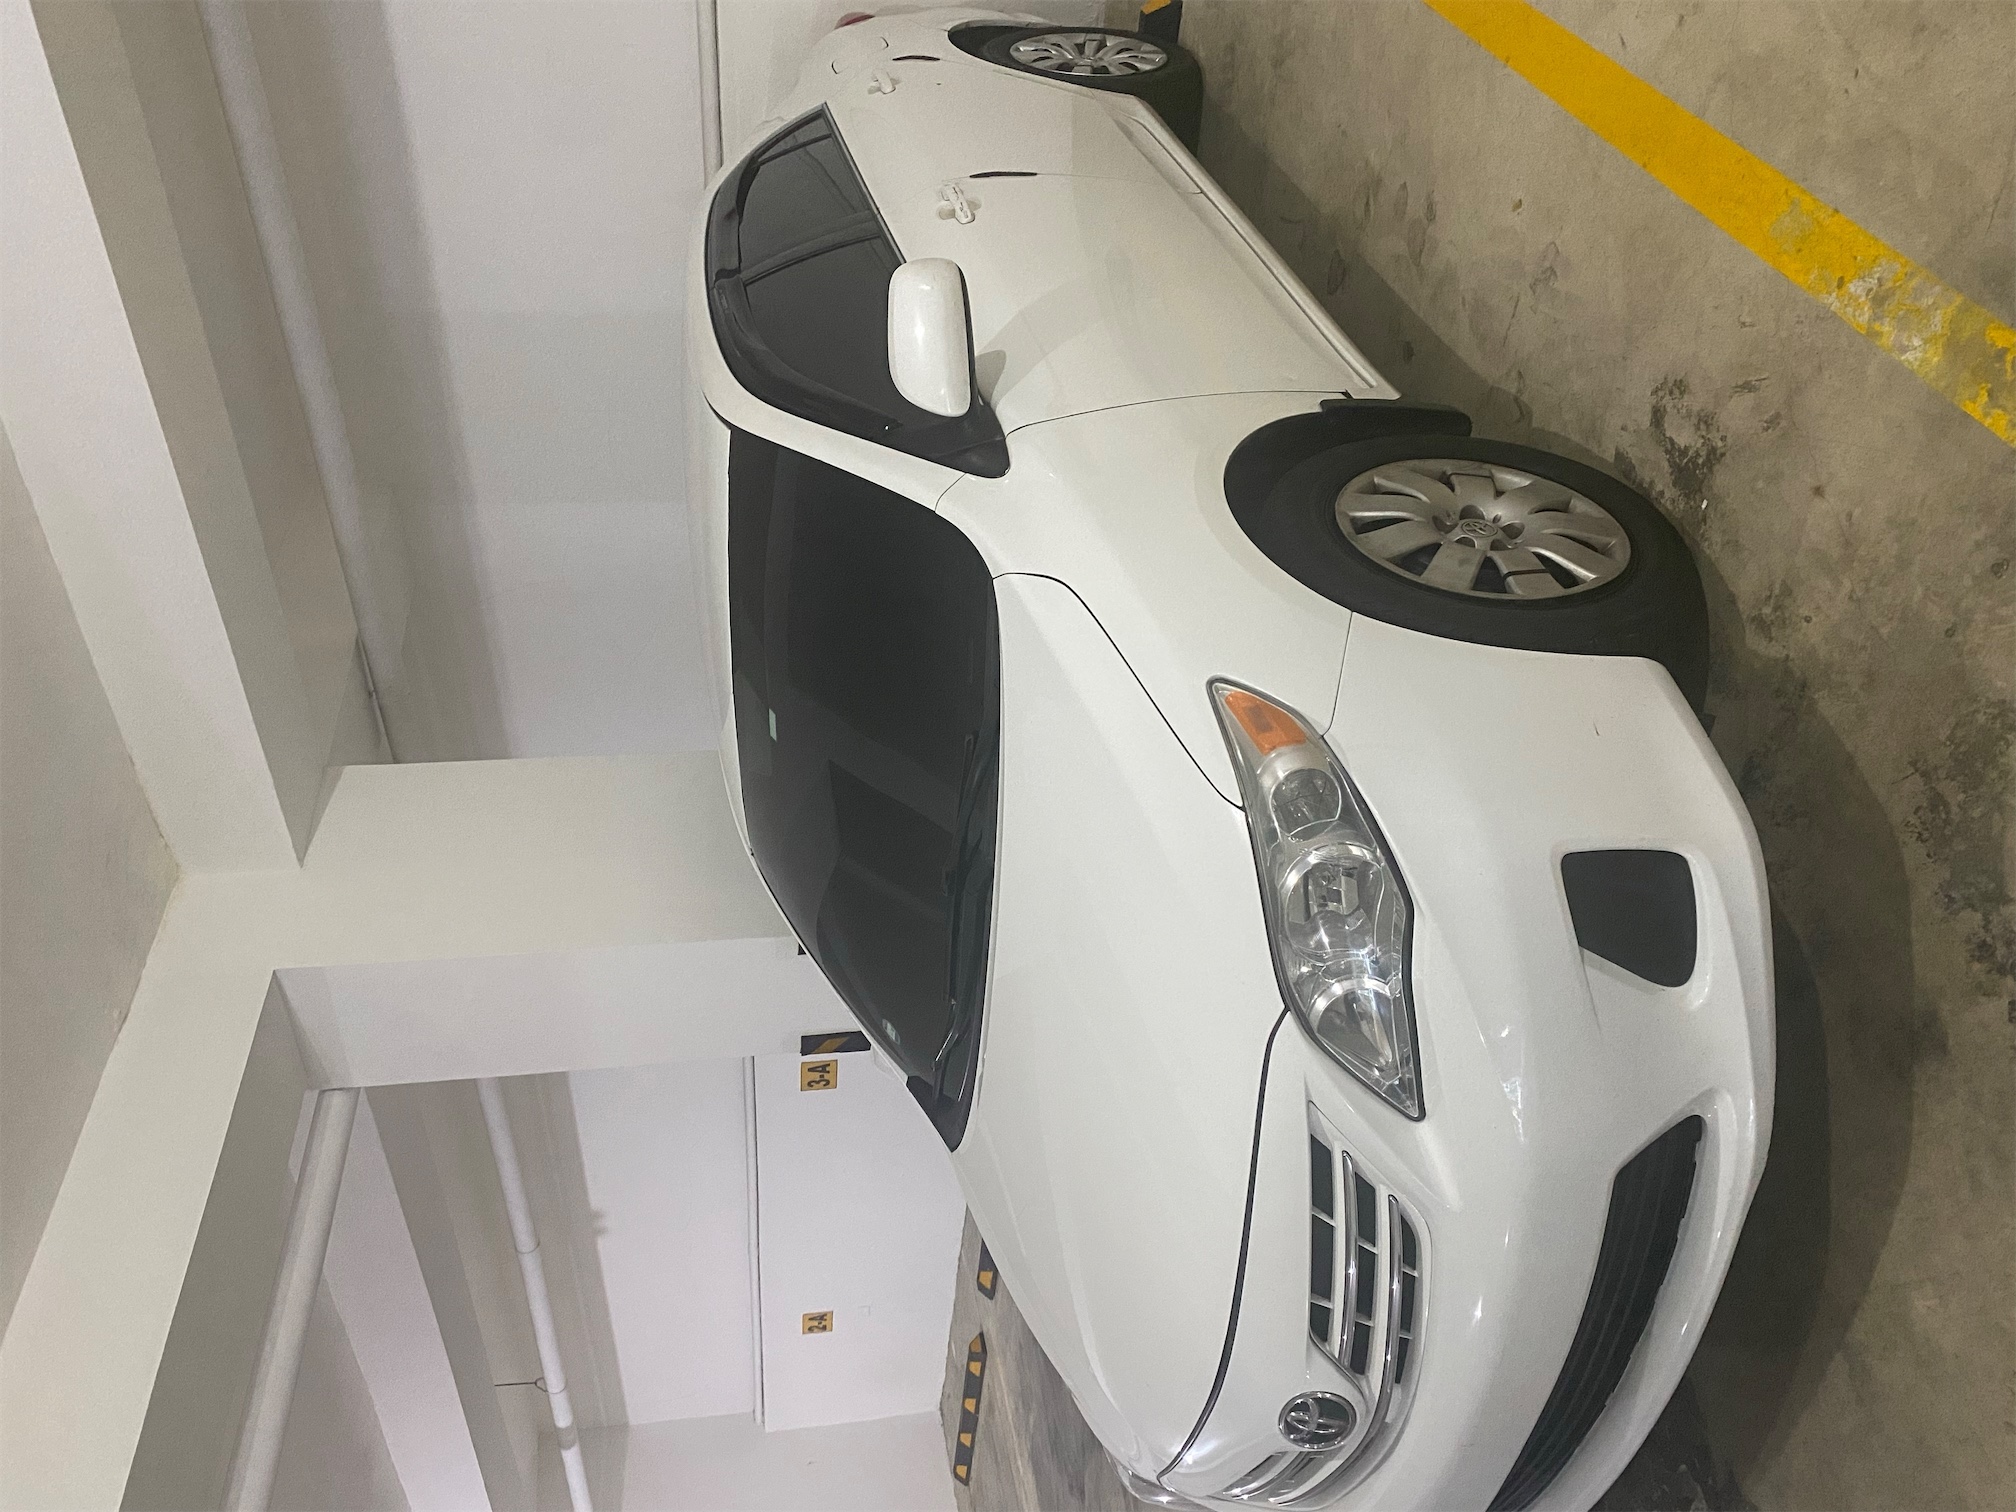 carros - Toyota Corolla 2013 en condiciones óptimas 8